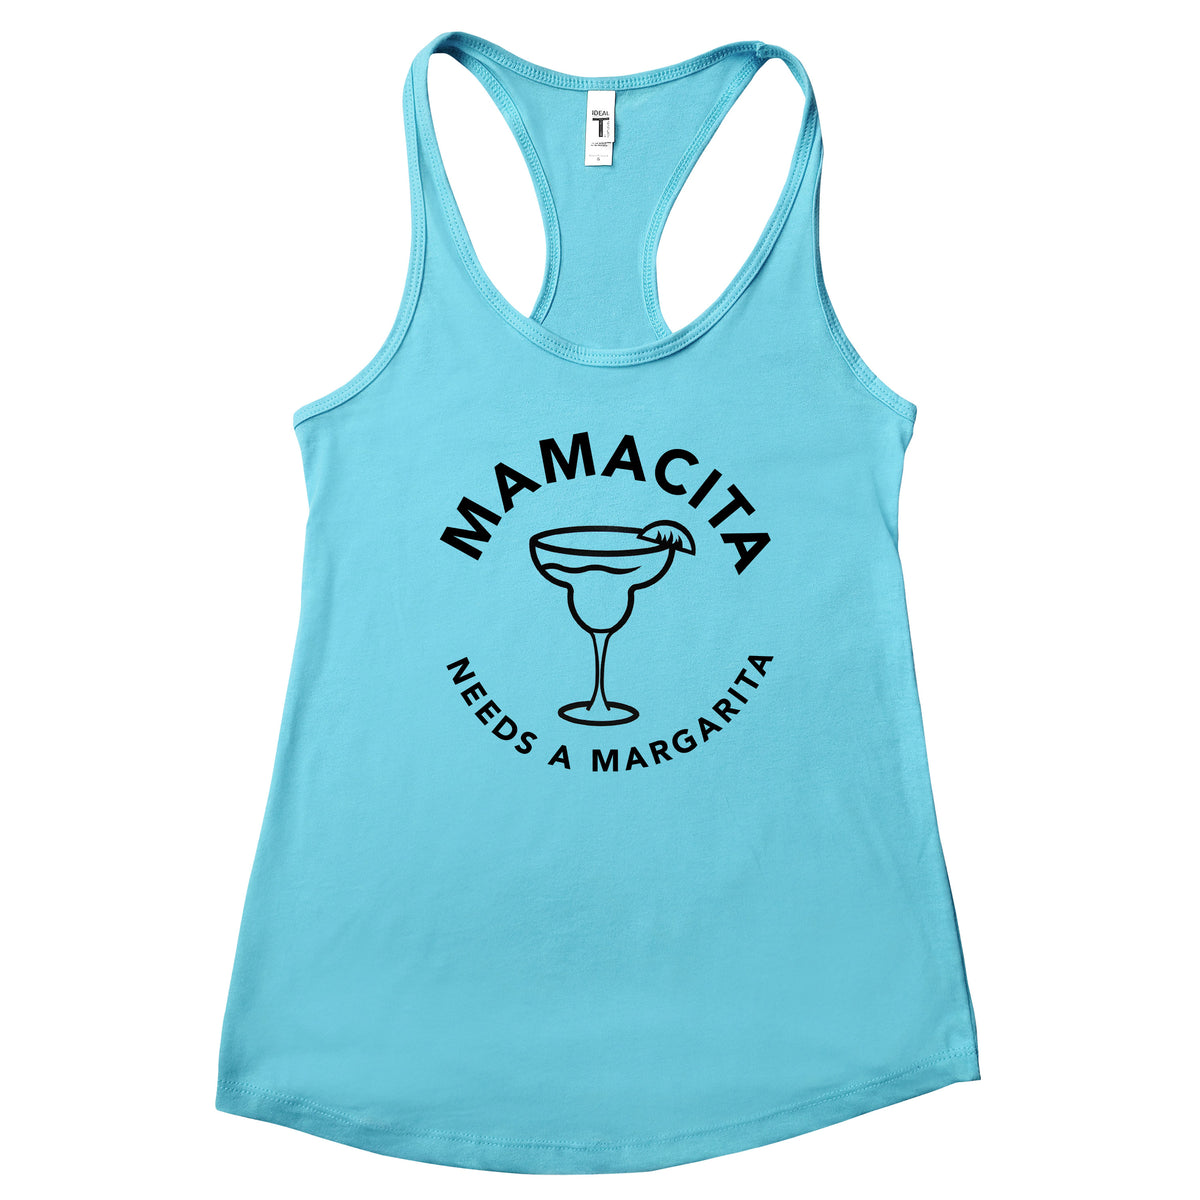 Mamacita Needs a Margarita Tank Top